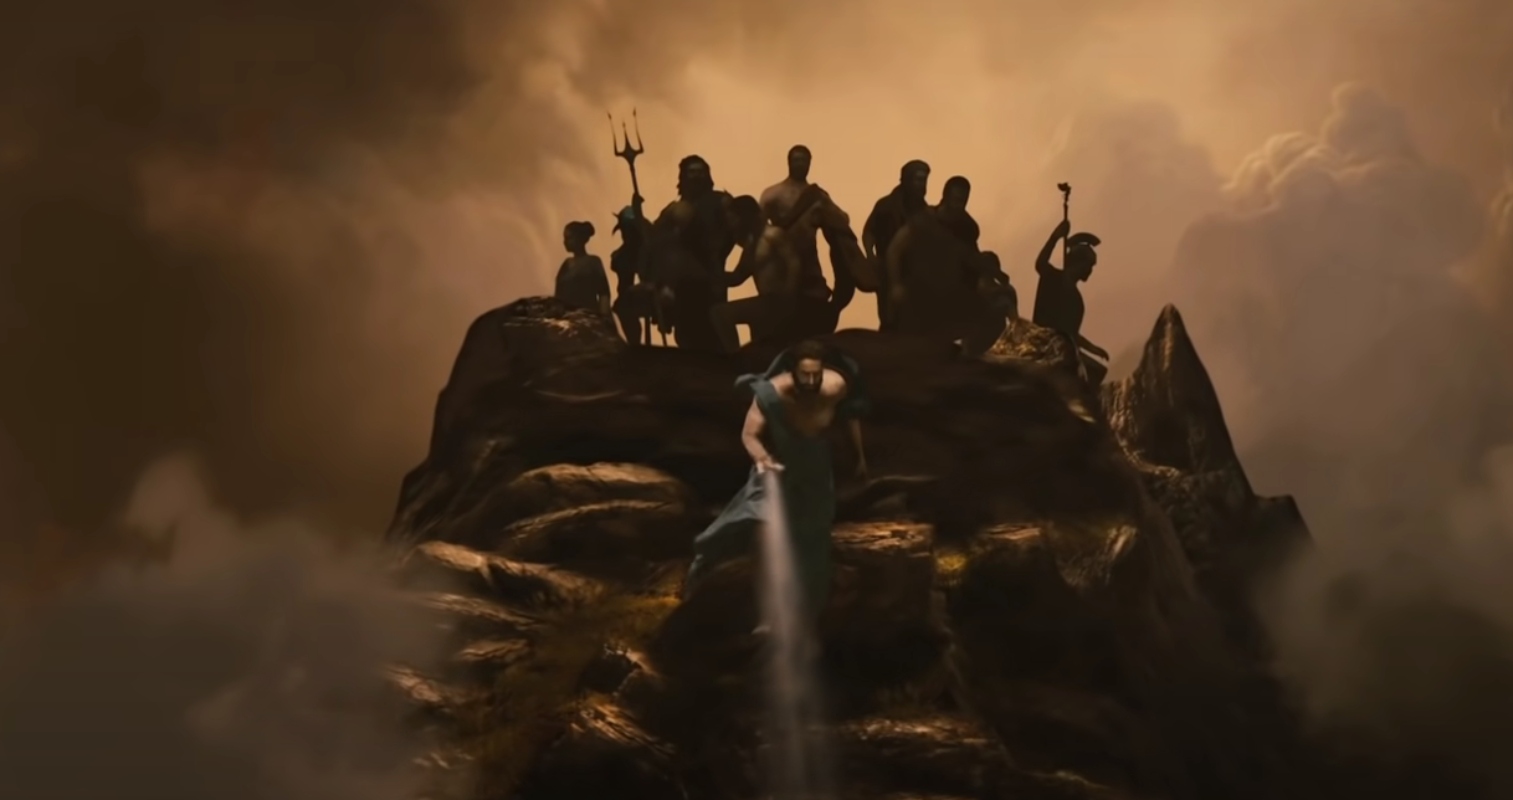 Shazam: Fury of the Gods' Trailer Builds DC Superhero Magic, With a Dragon  - CNET